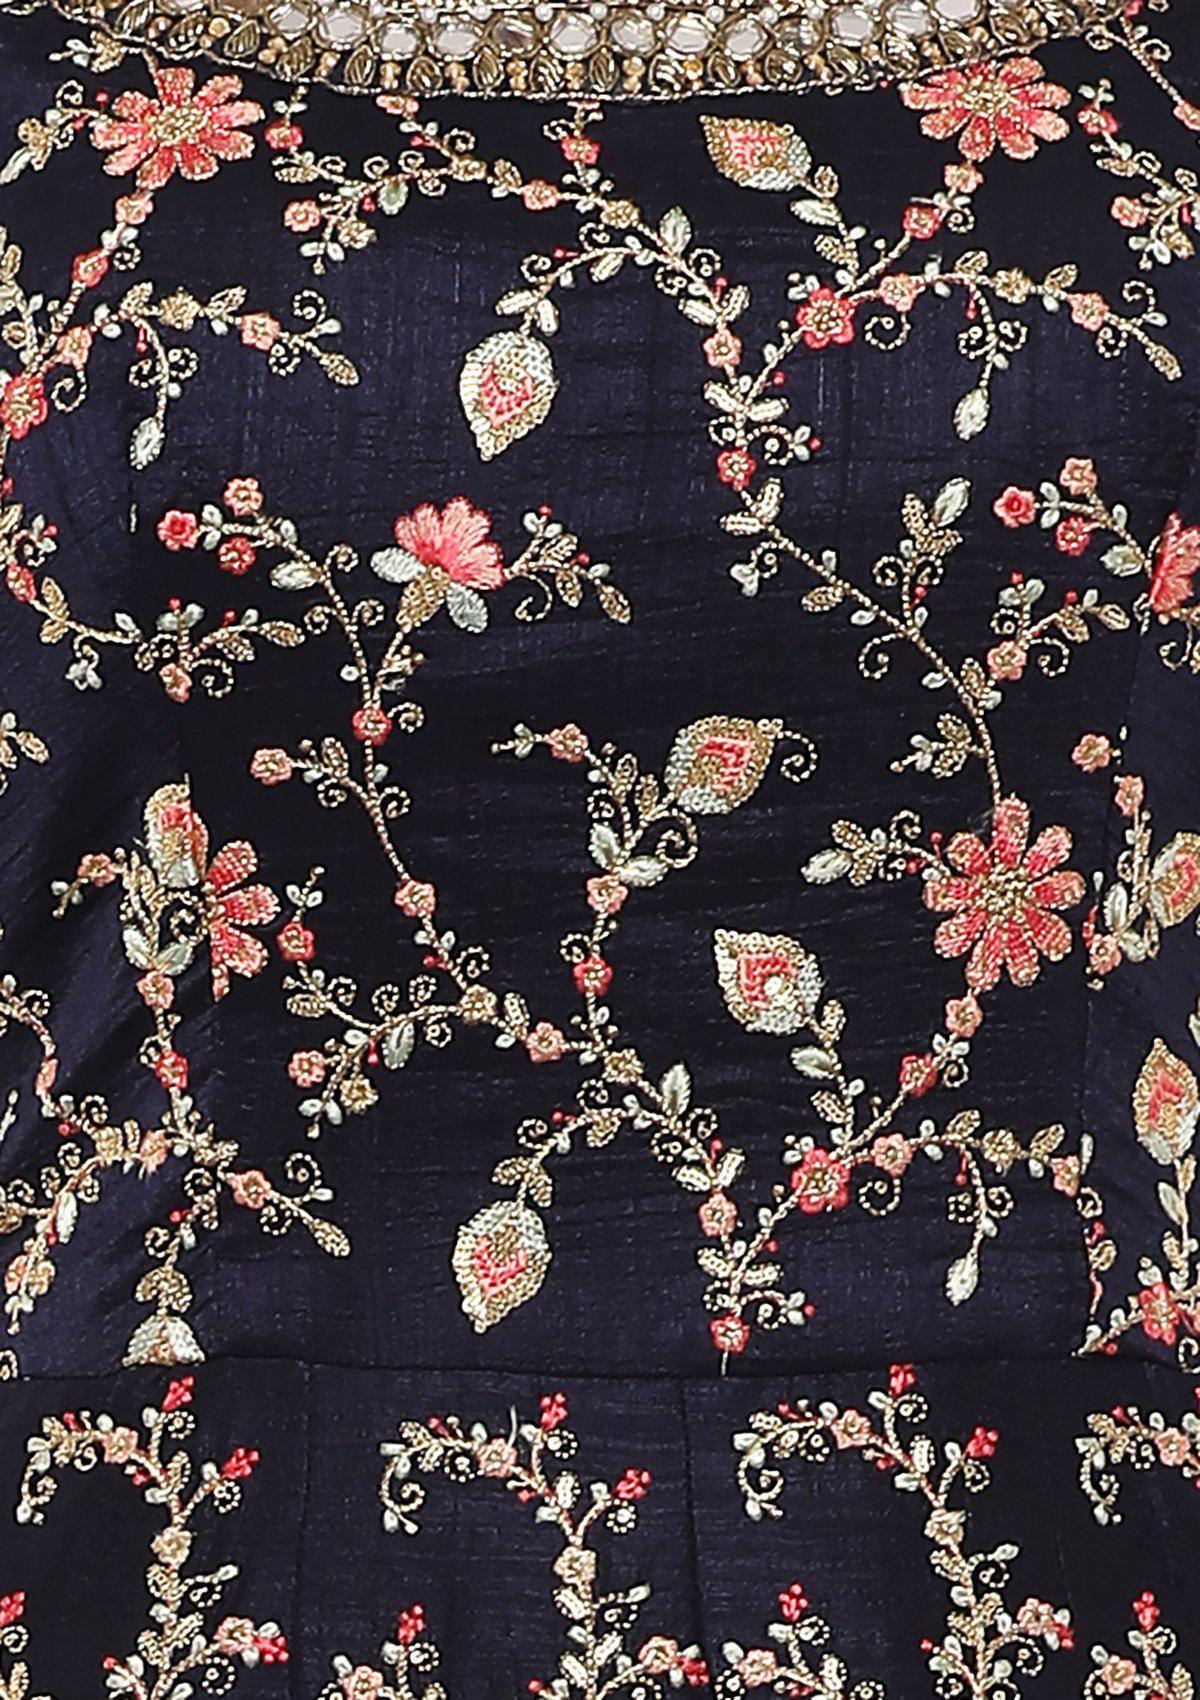 Navy Blue Floral Thread Work Designer Gown-Koskii